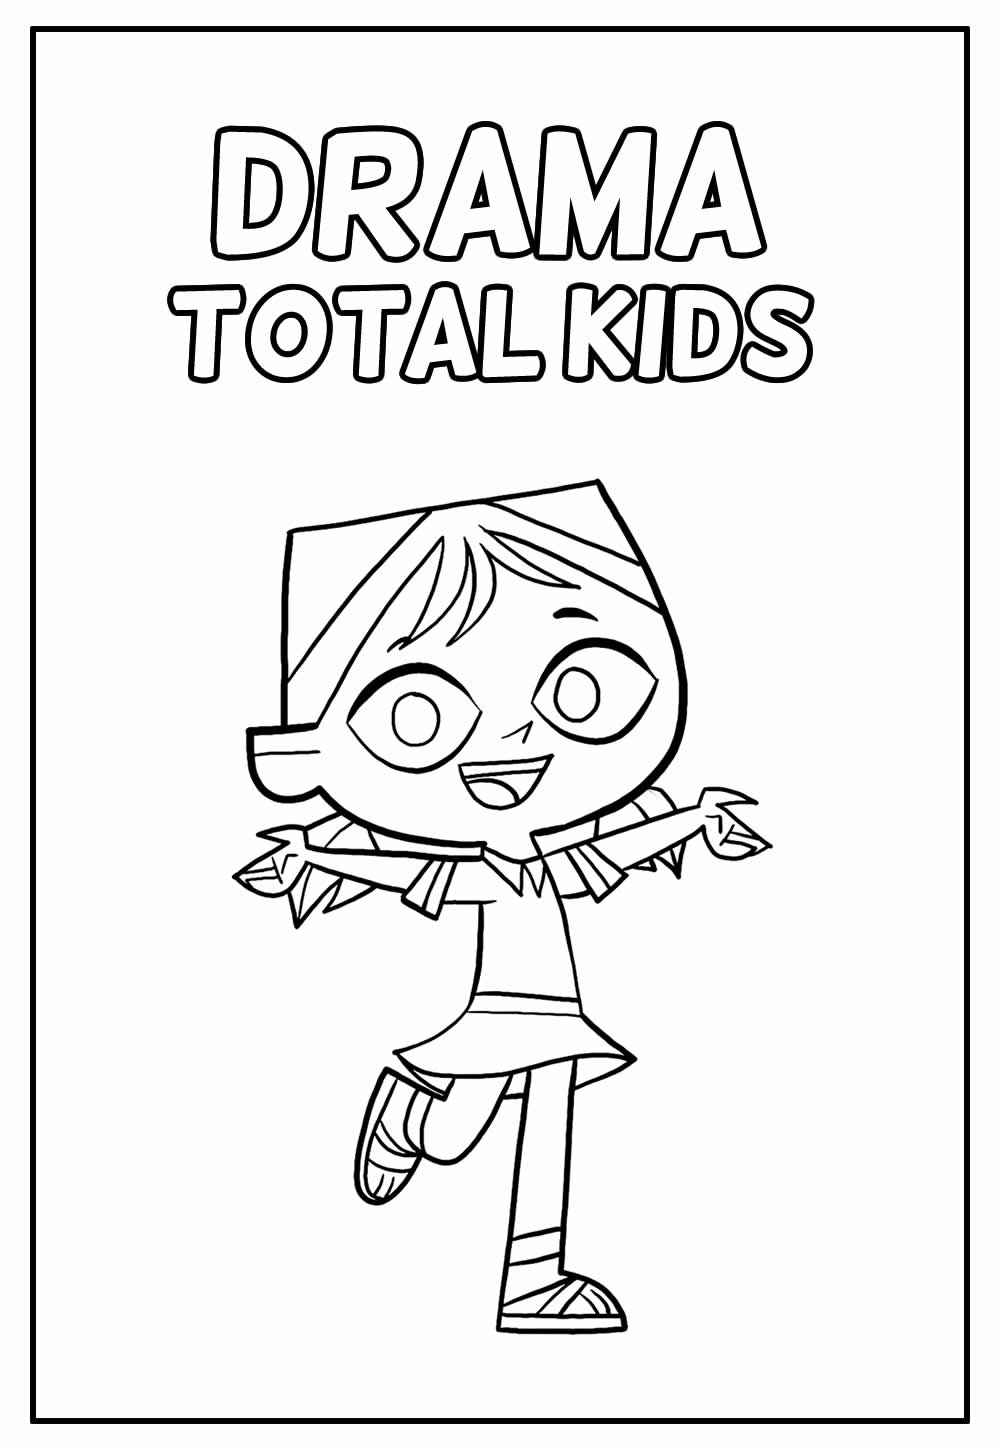 Desenho Educastivo de Drama Total Kids para colorir